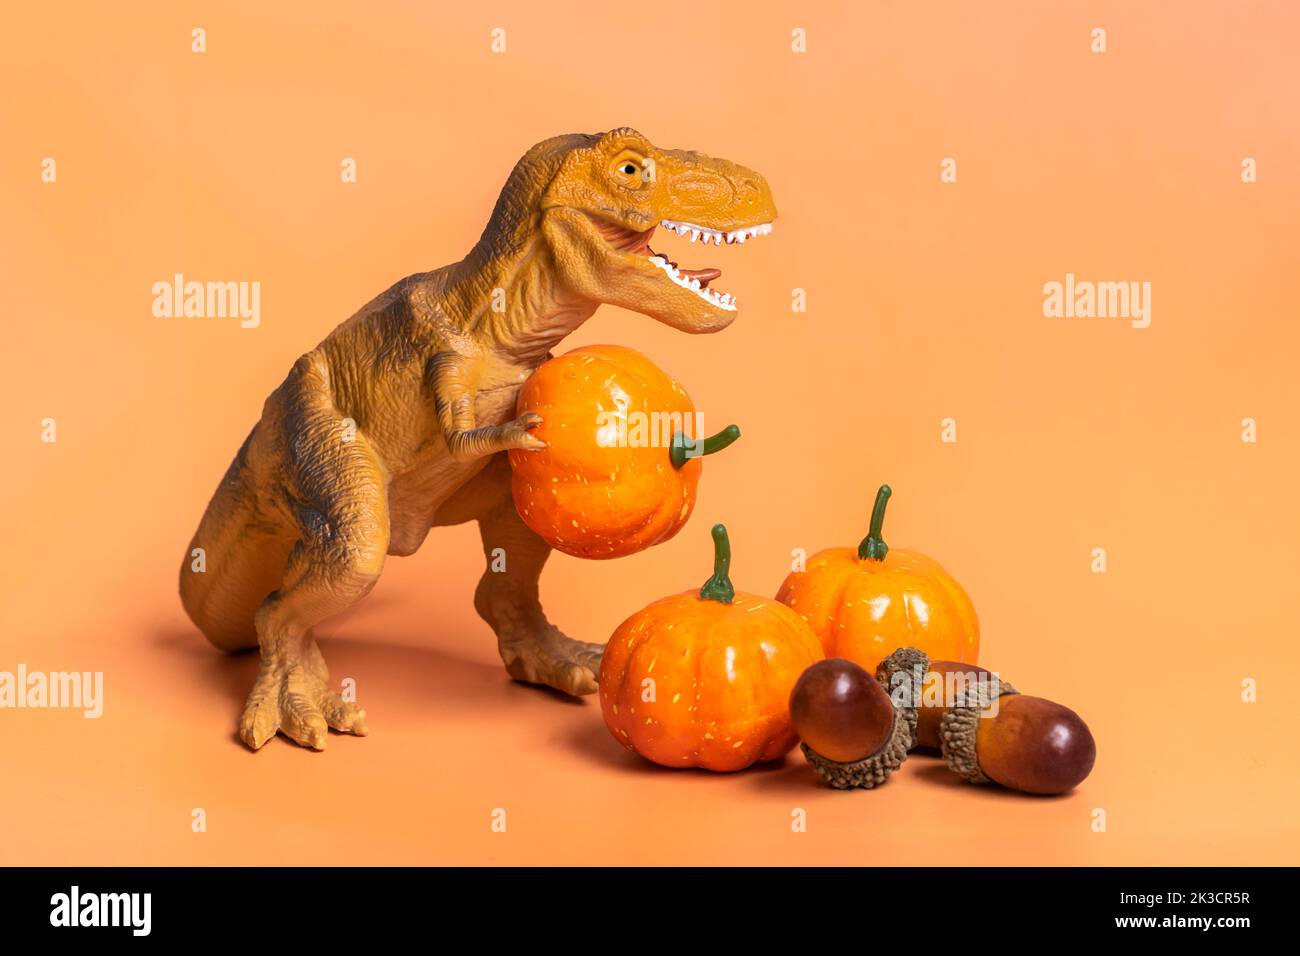 Jouet dinosaure Tyrannosaurus tenant la citrouille dans ses pattes, sur le podium blanc isolé sur fond orange carte de vœux de vacances Joyeux jour d'Halloween, Hello Autumn Creative minimal concept. Banque D'Images